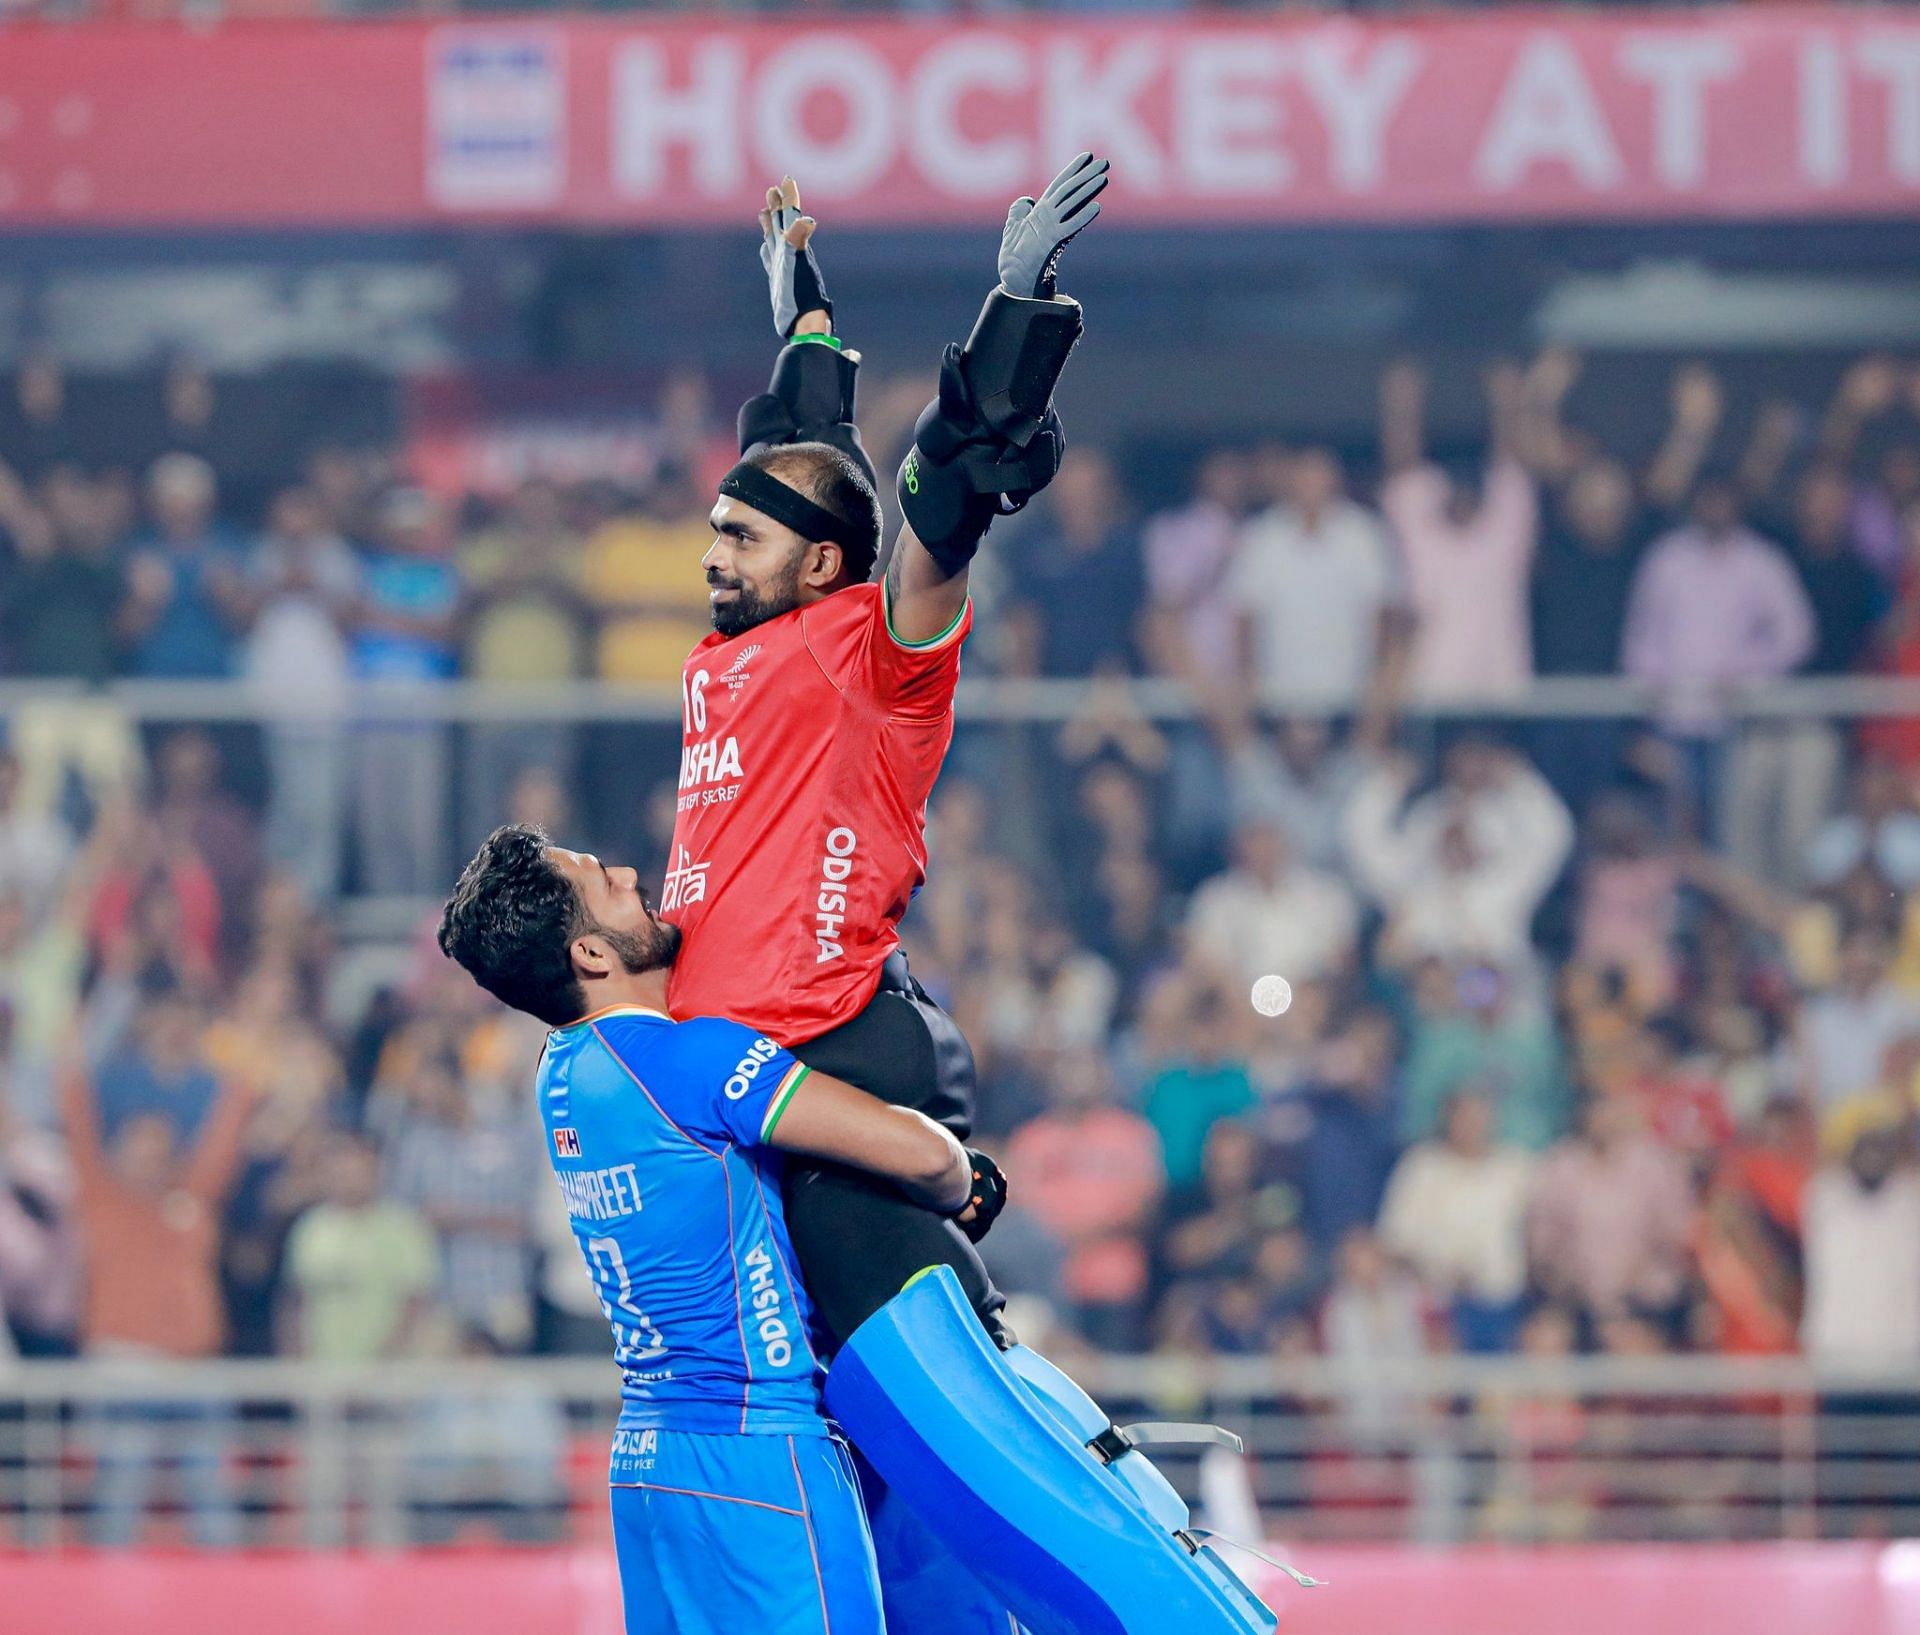 शूटऑफ में जीत के बाद कप्तान हरमनप्रीत ने गोलकीपर श्रीजेश को गोद में उठा लिया।